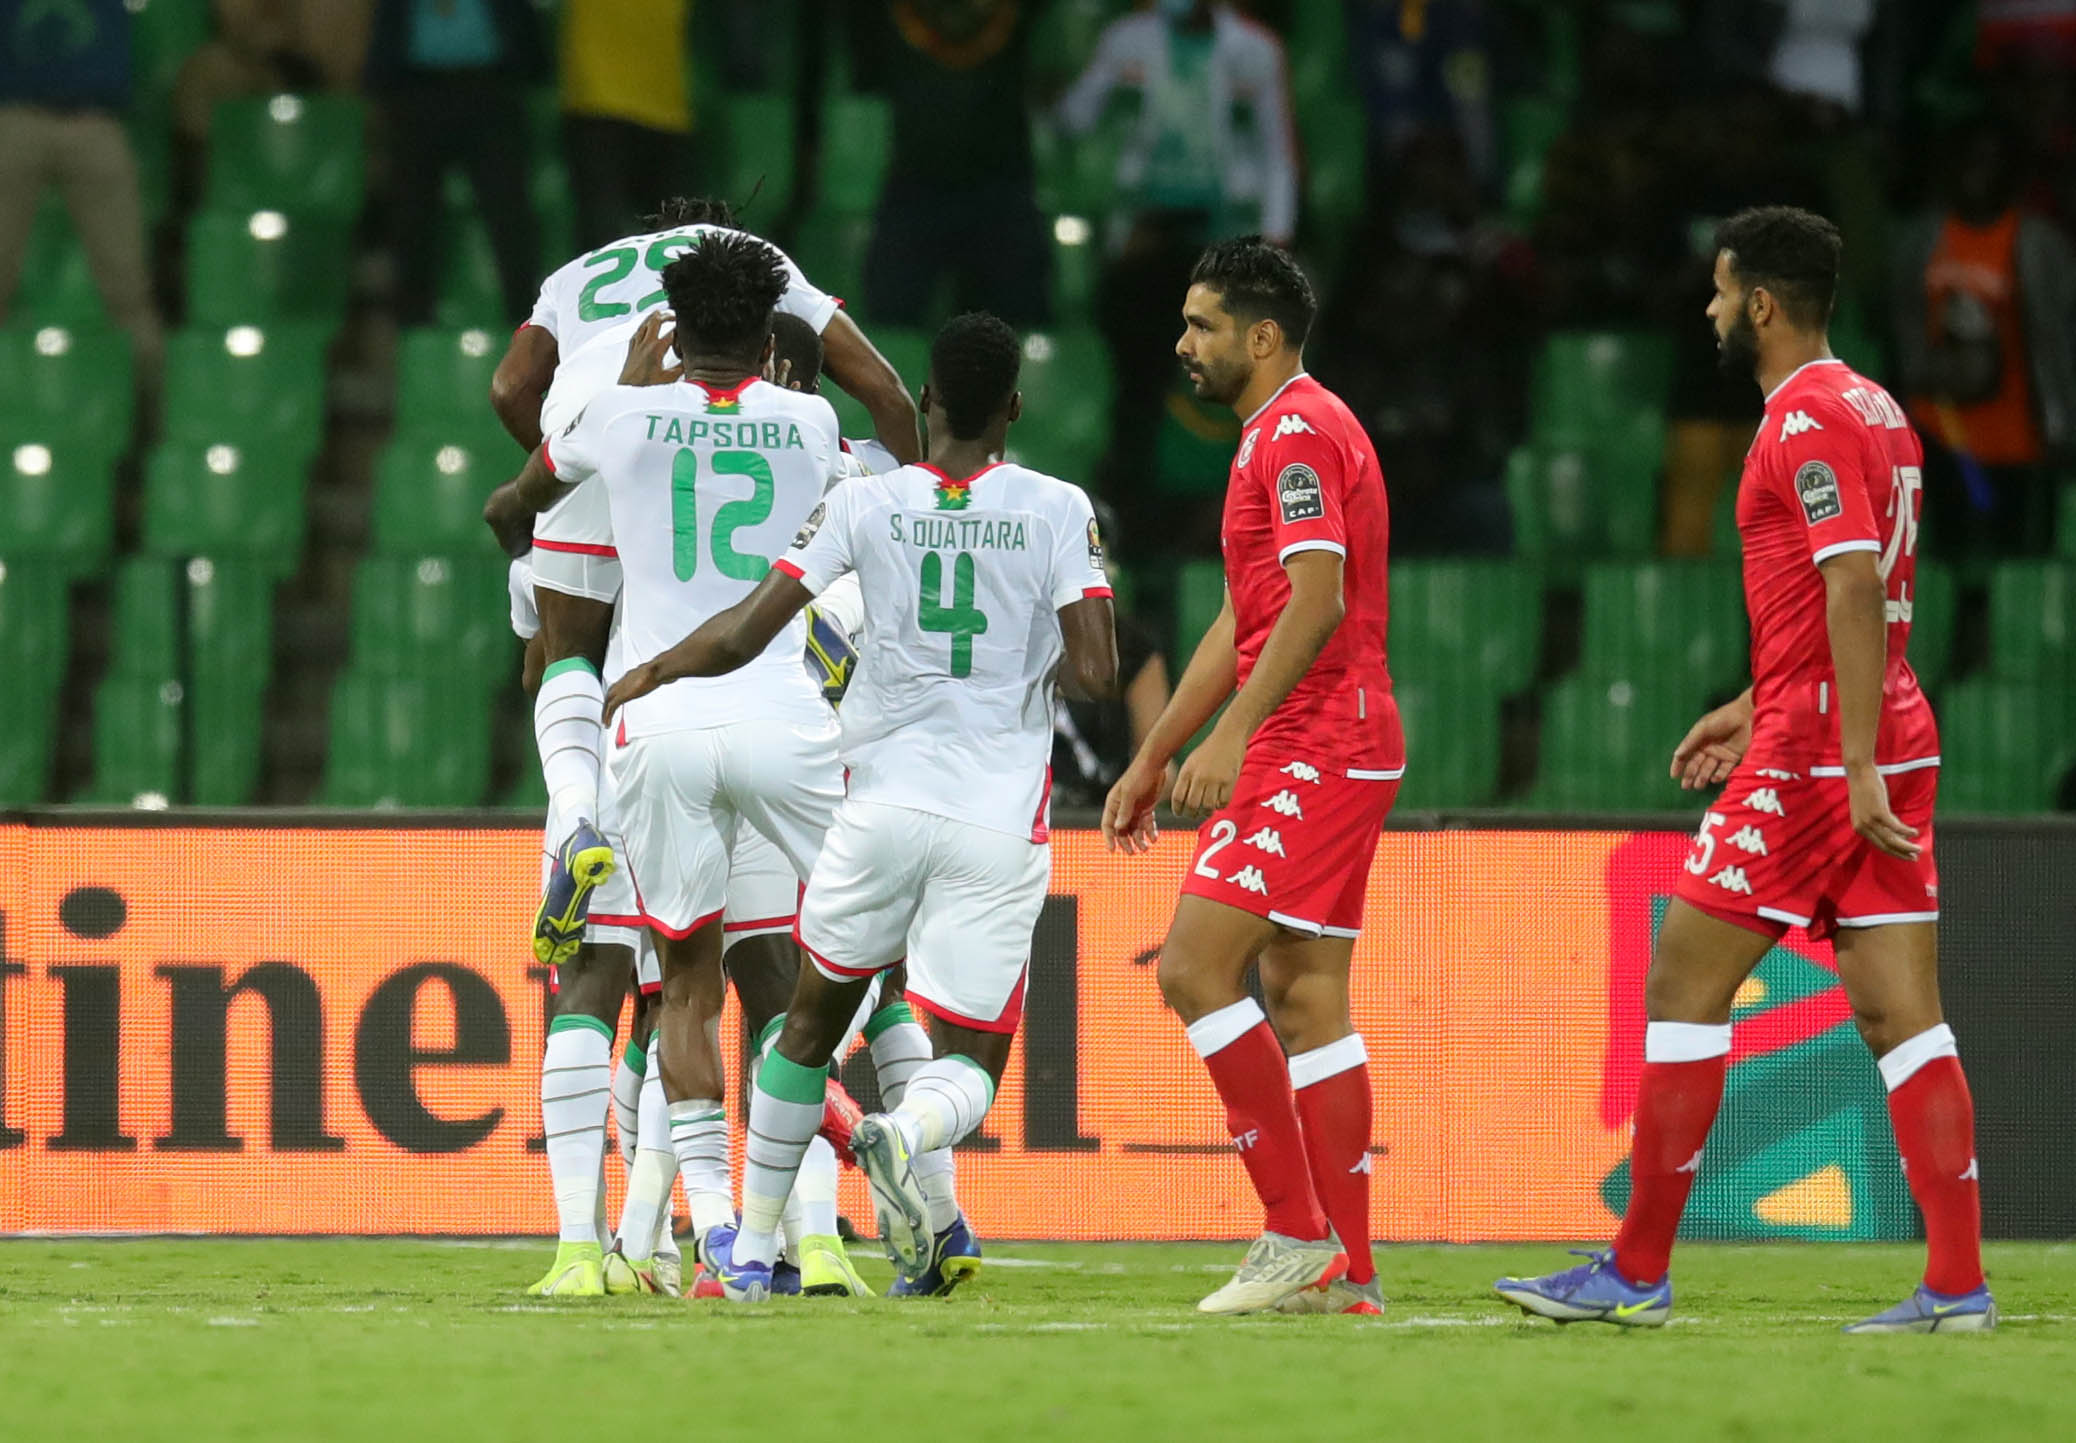 AFCON 2021: Burkina Faso stun Tunisia 1-0 to book semi-final berth